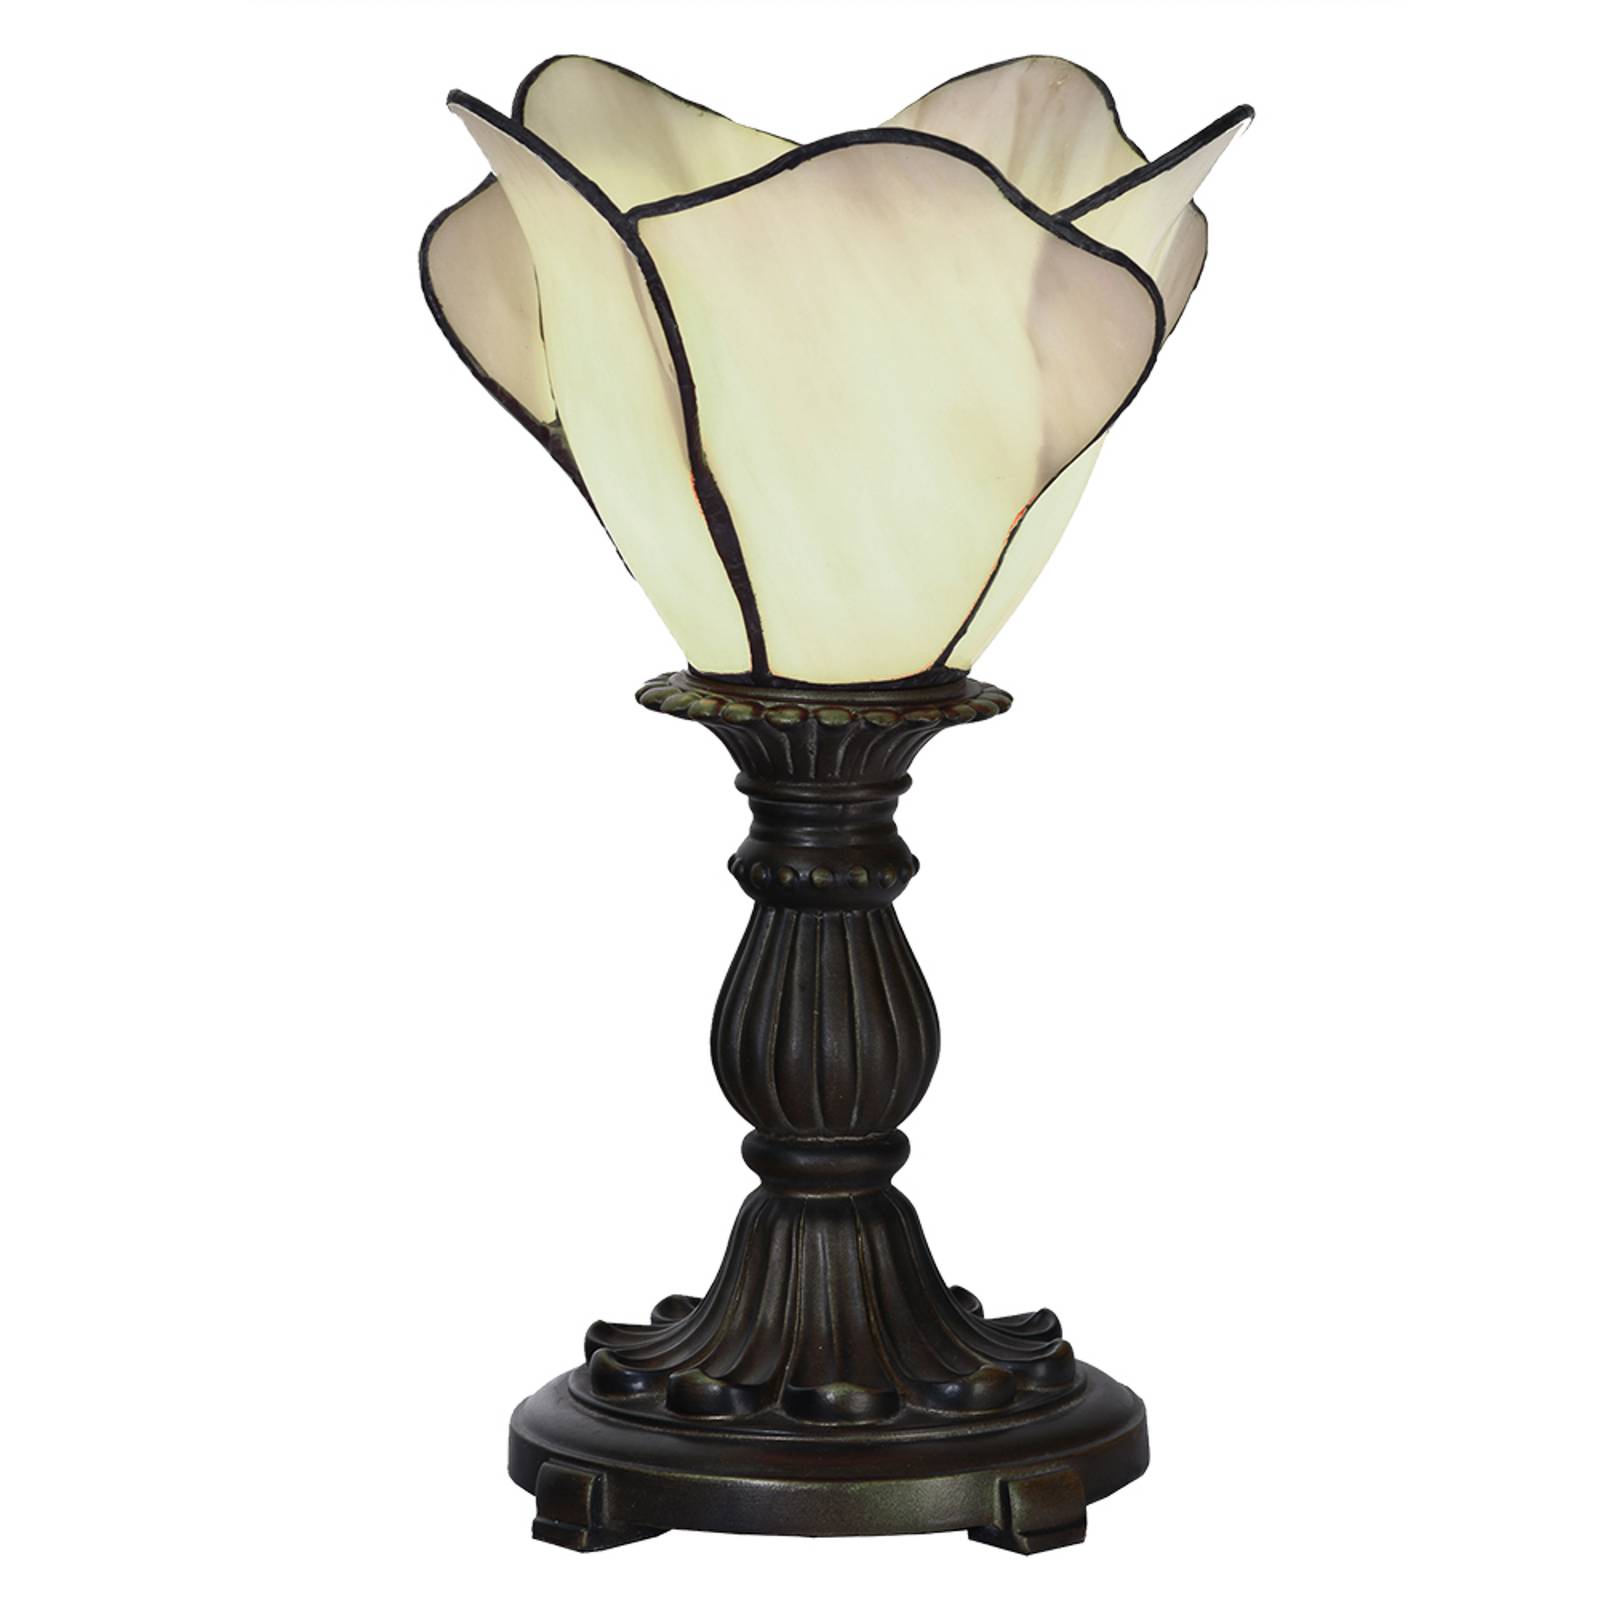 E-shop Stolová lampa 5LL-6099N, v krémovej, Tiffany štýl